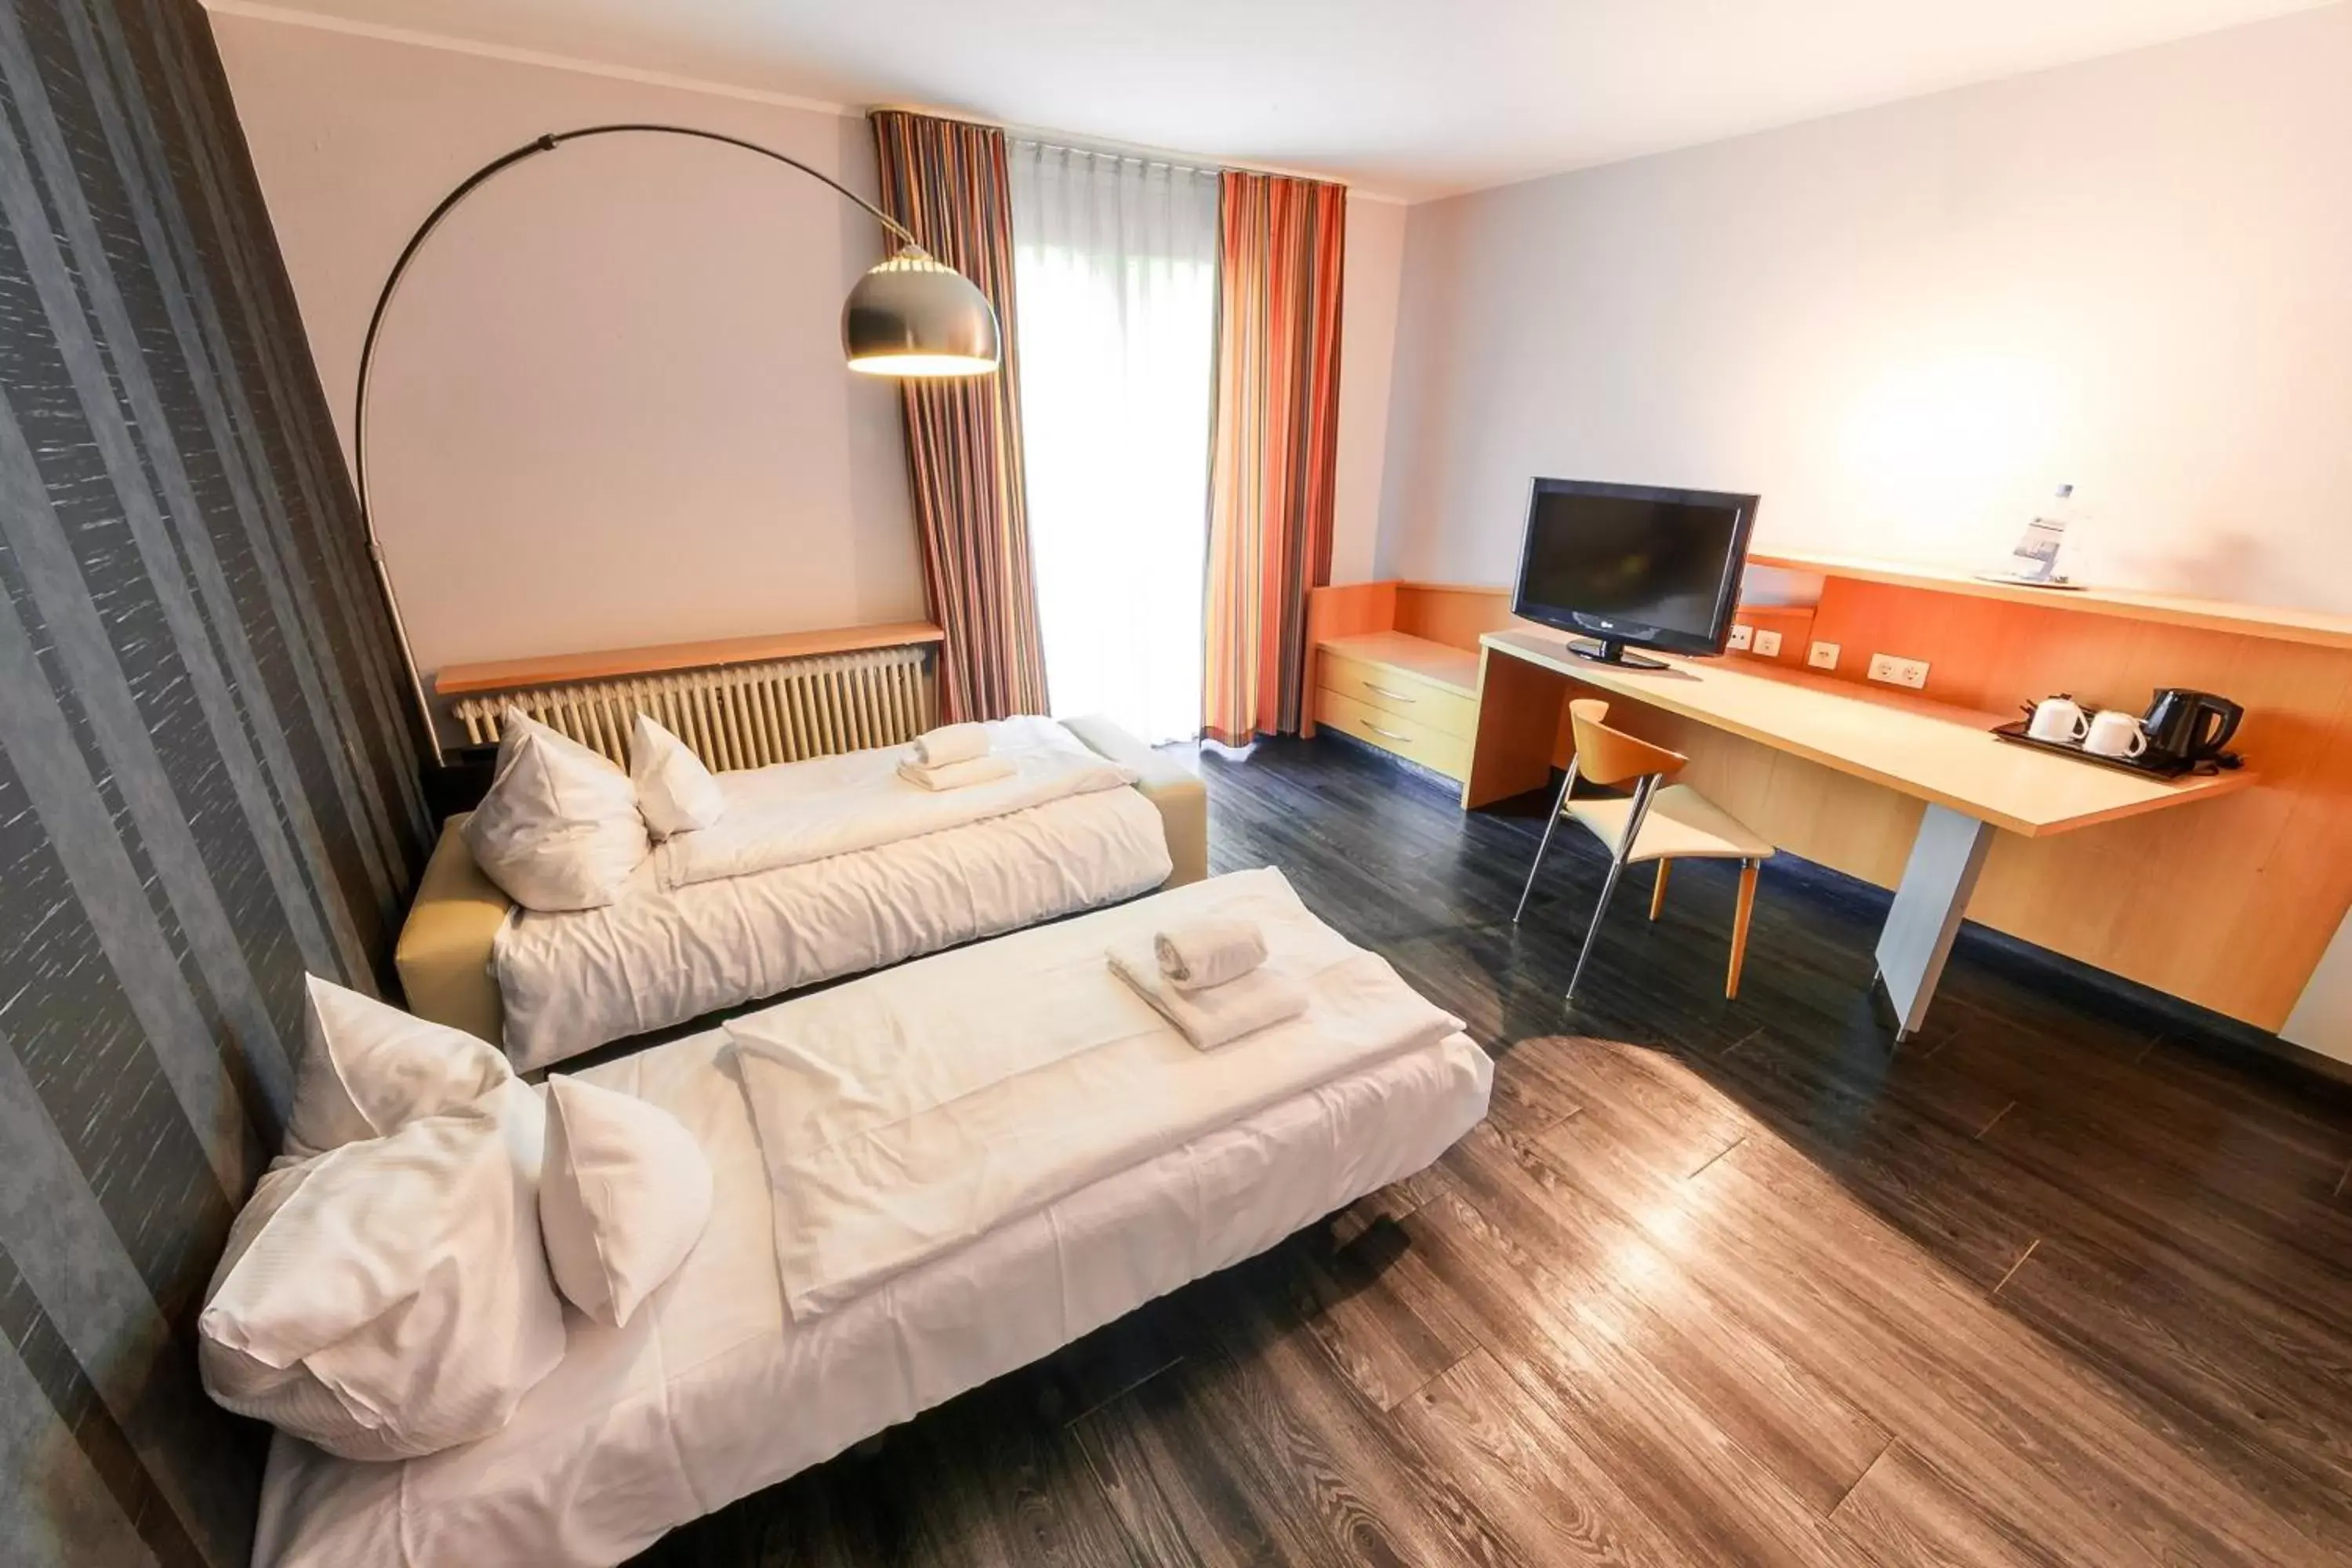 Bedroom, TV/Entertainment Center in Best Western Plaza Hotel Stuttgart-Ditzingen